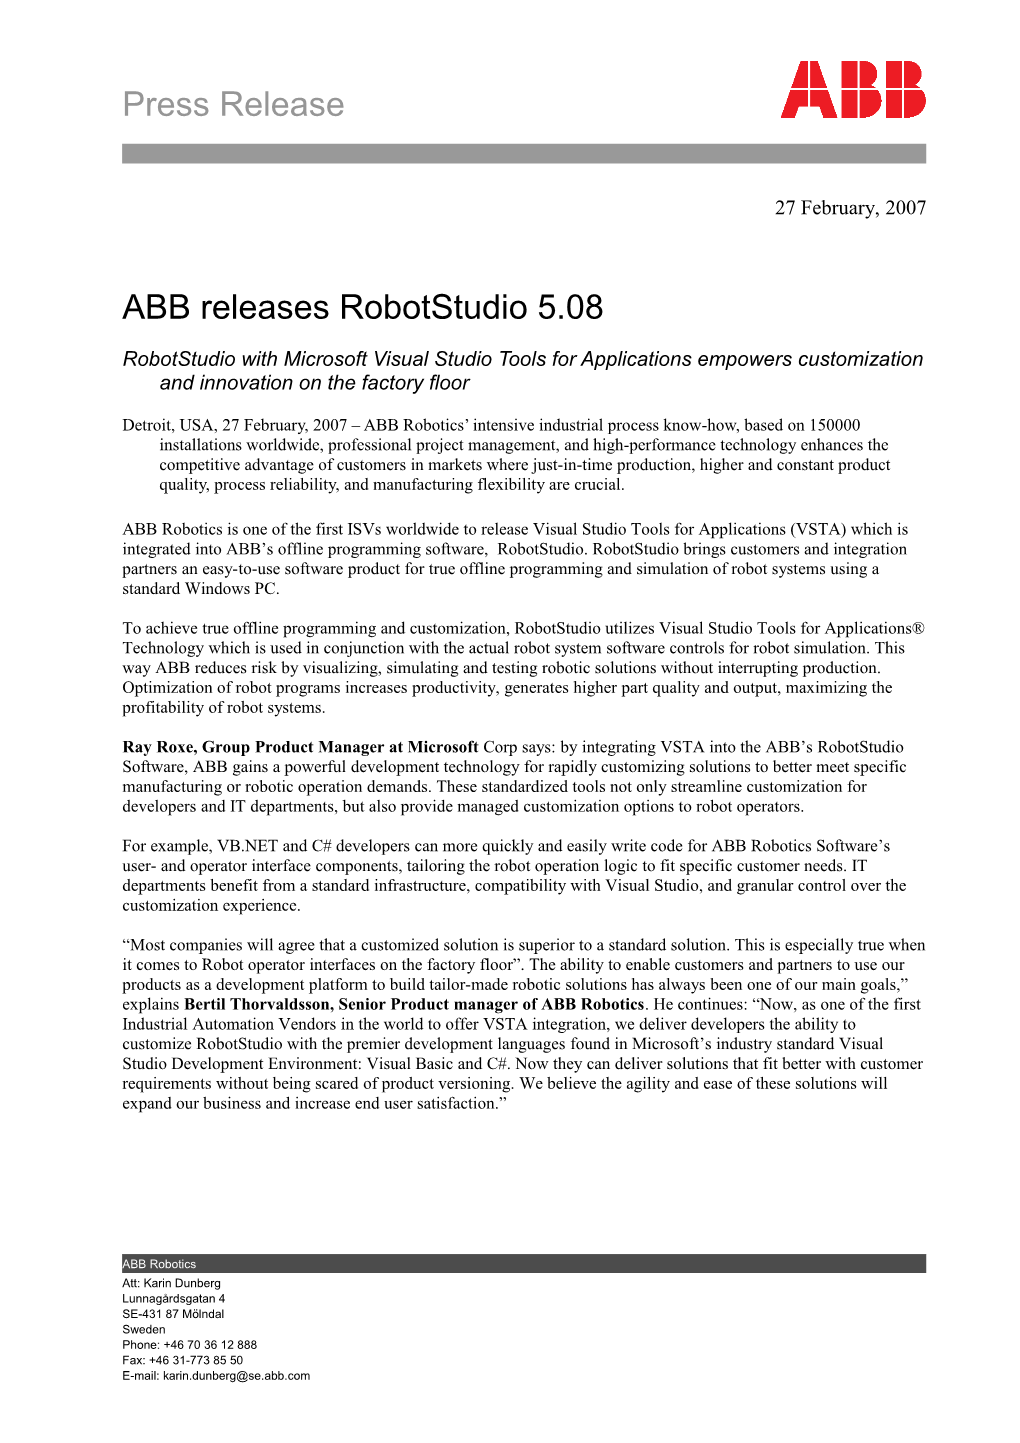 ABB Releases Robotstudio 5.08